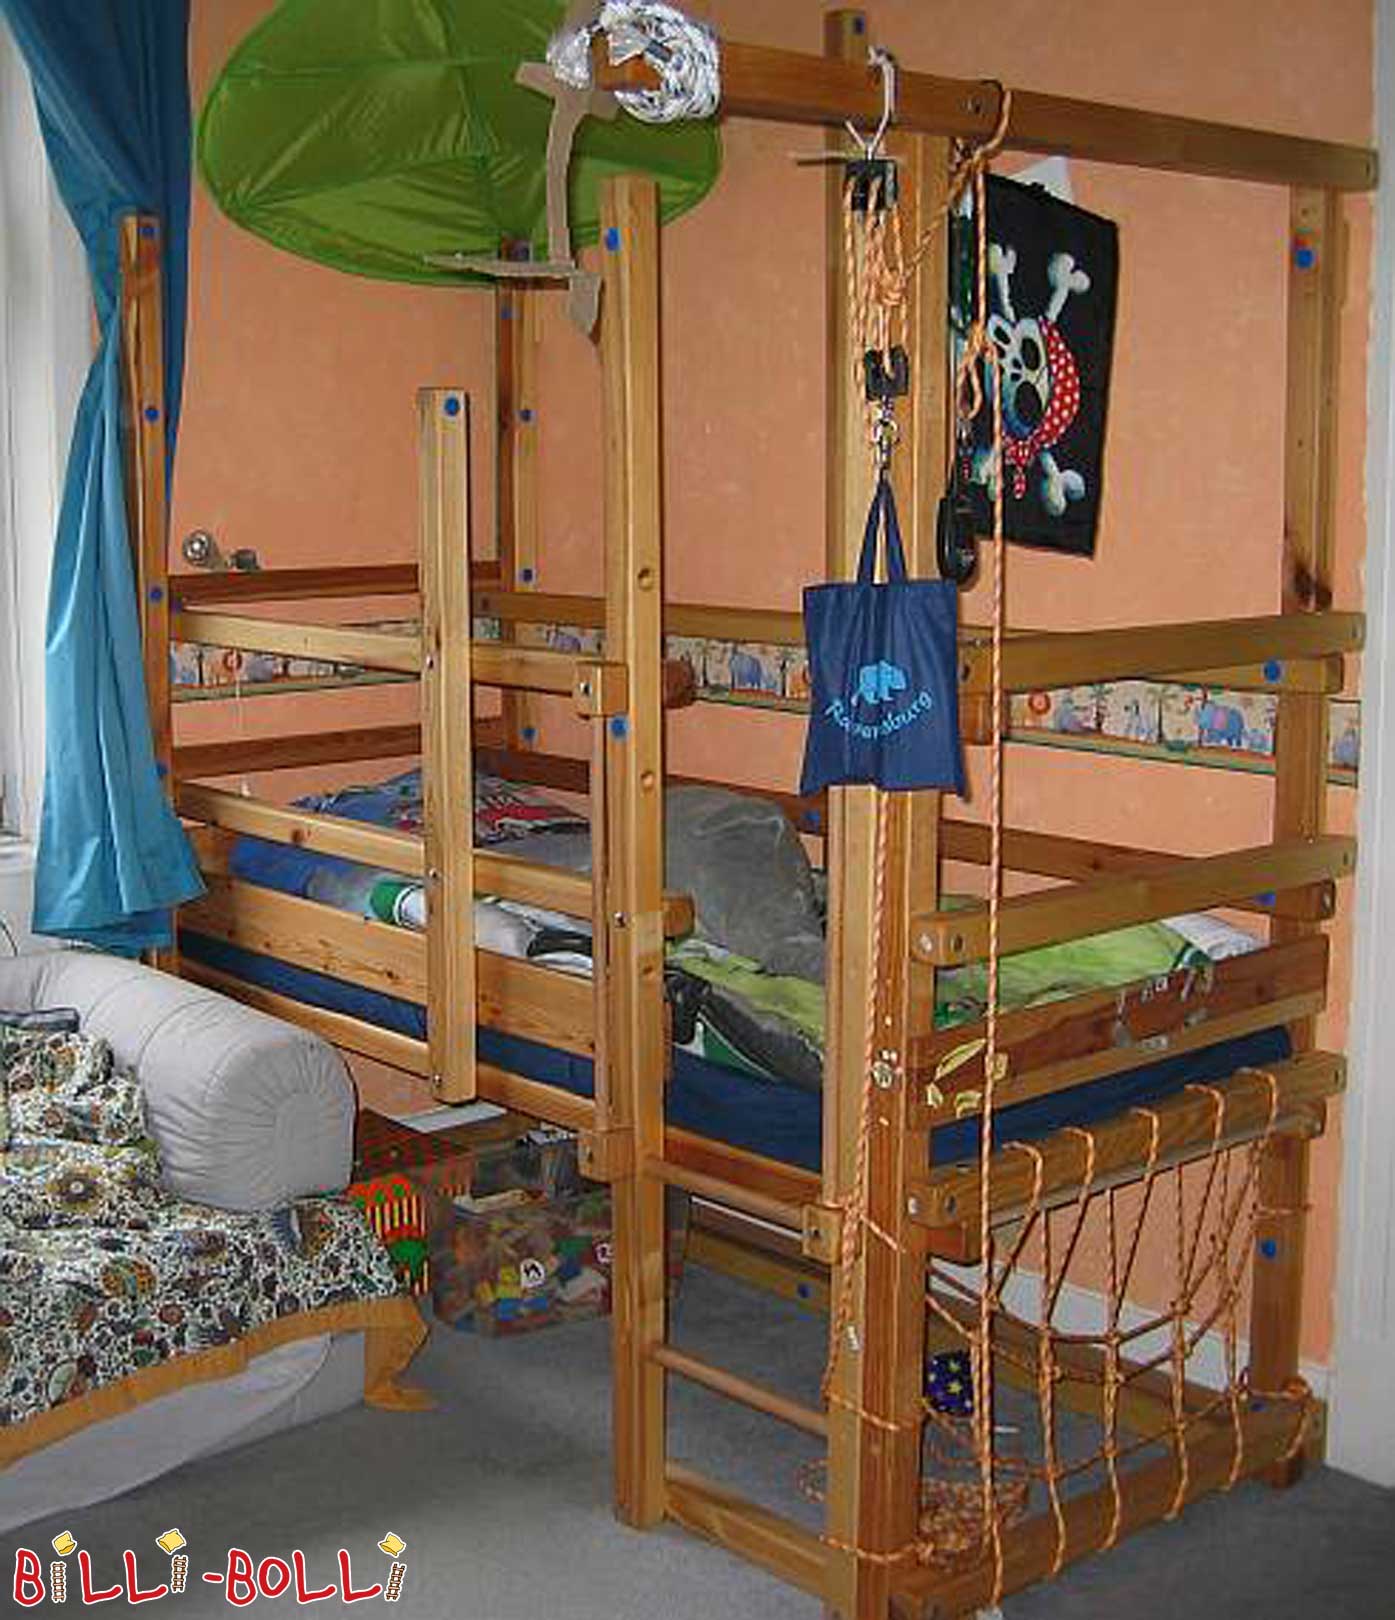 Billi-Bolli cama loft de cultivo (Categoría: cama alta segunda mano)